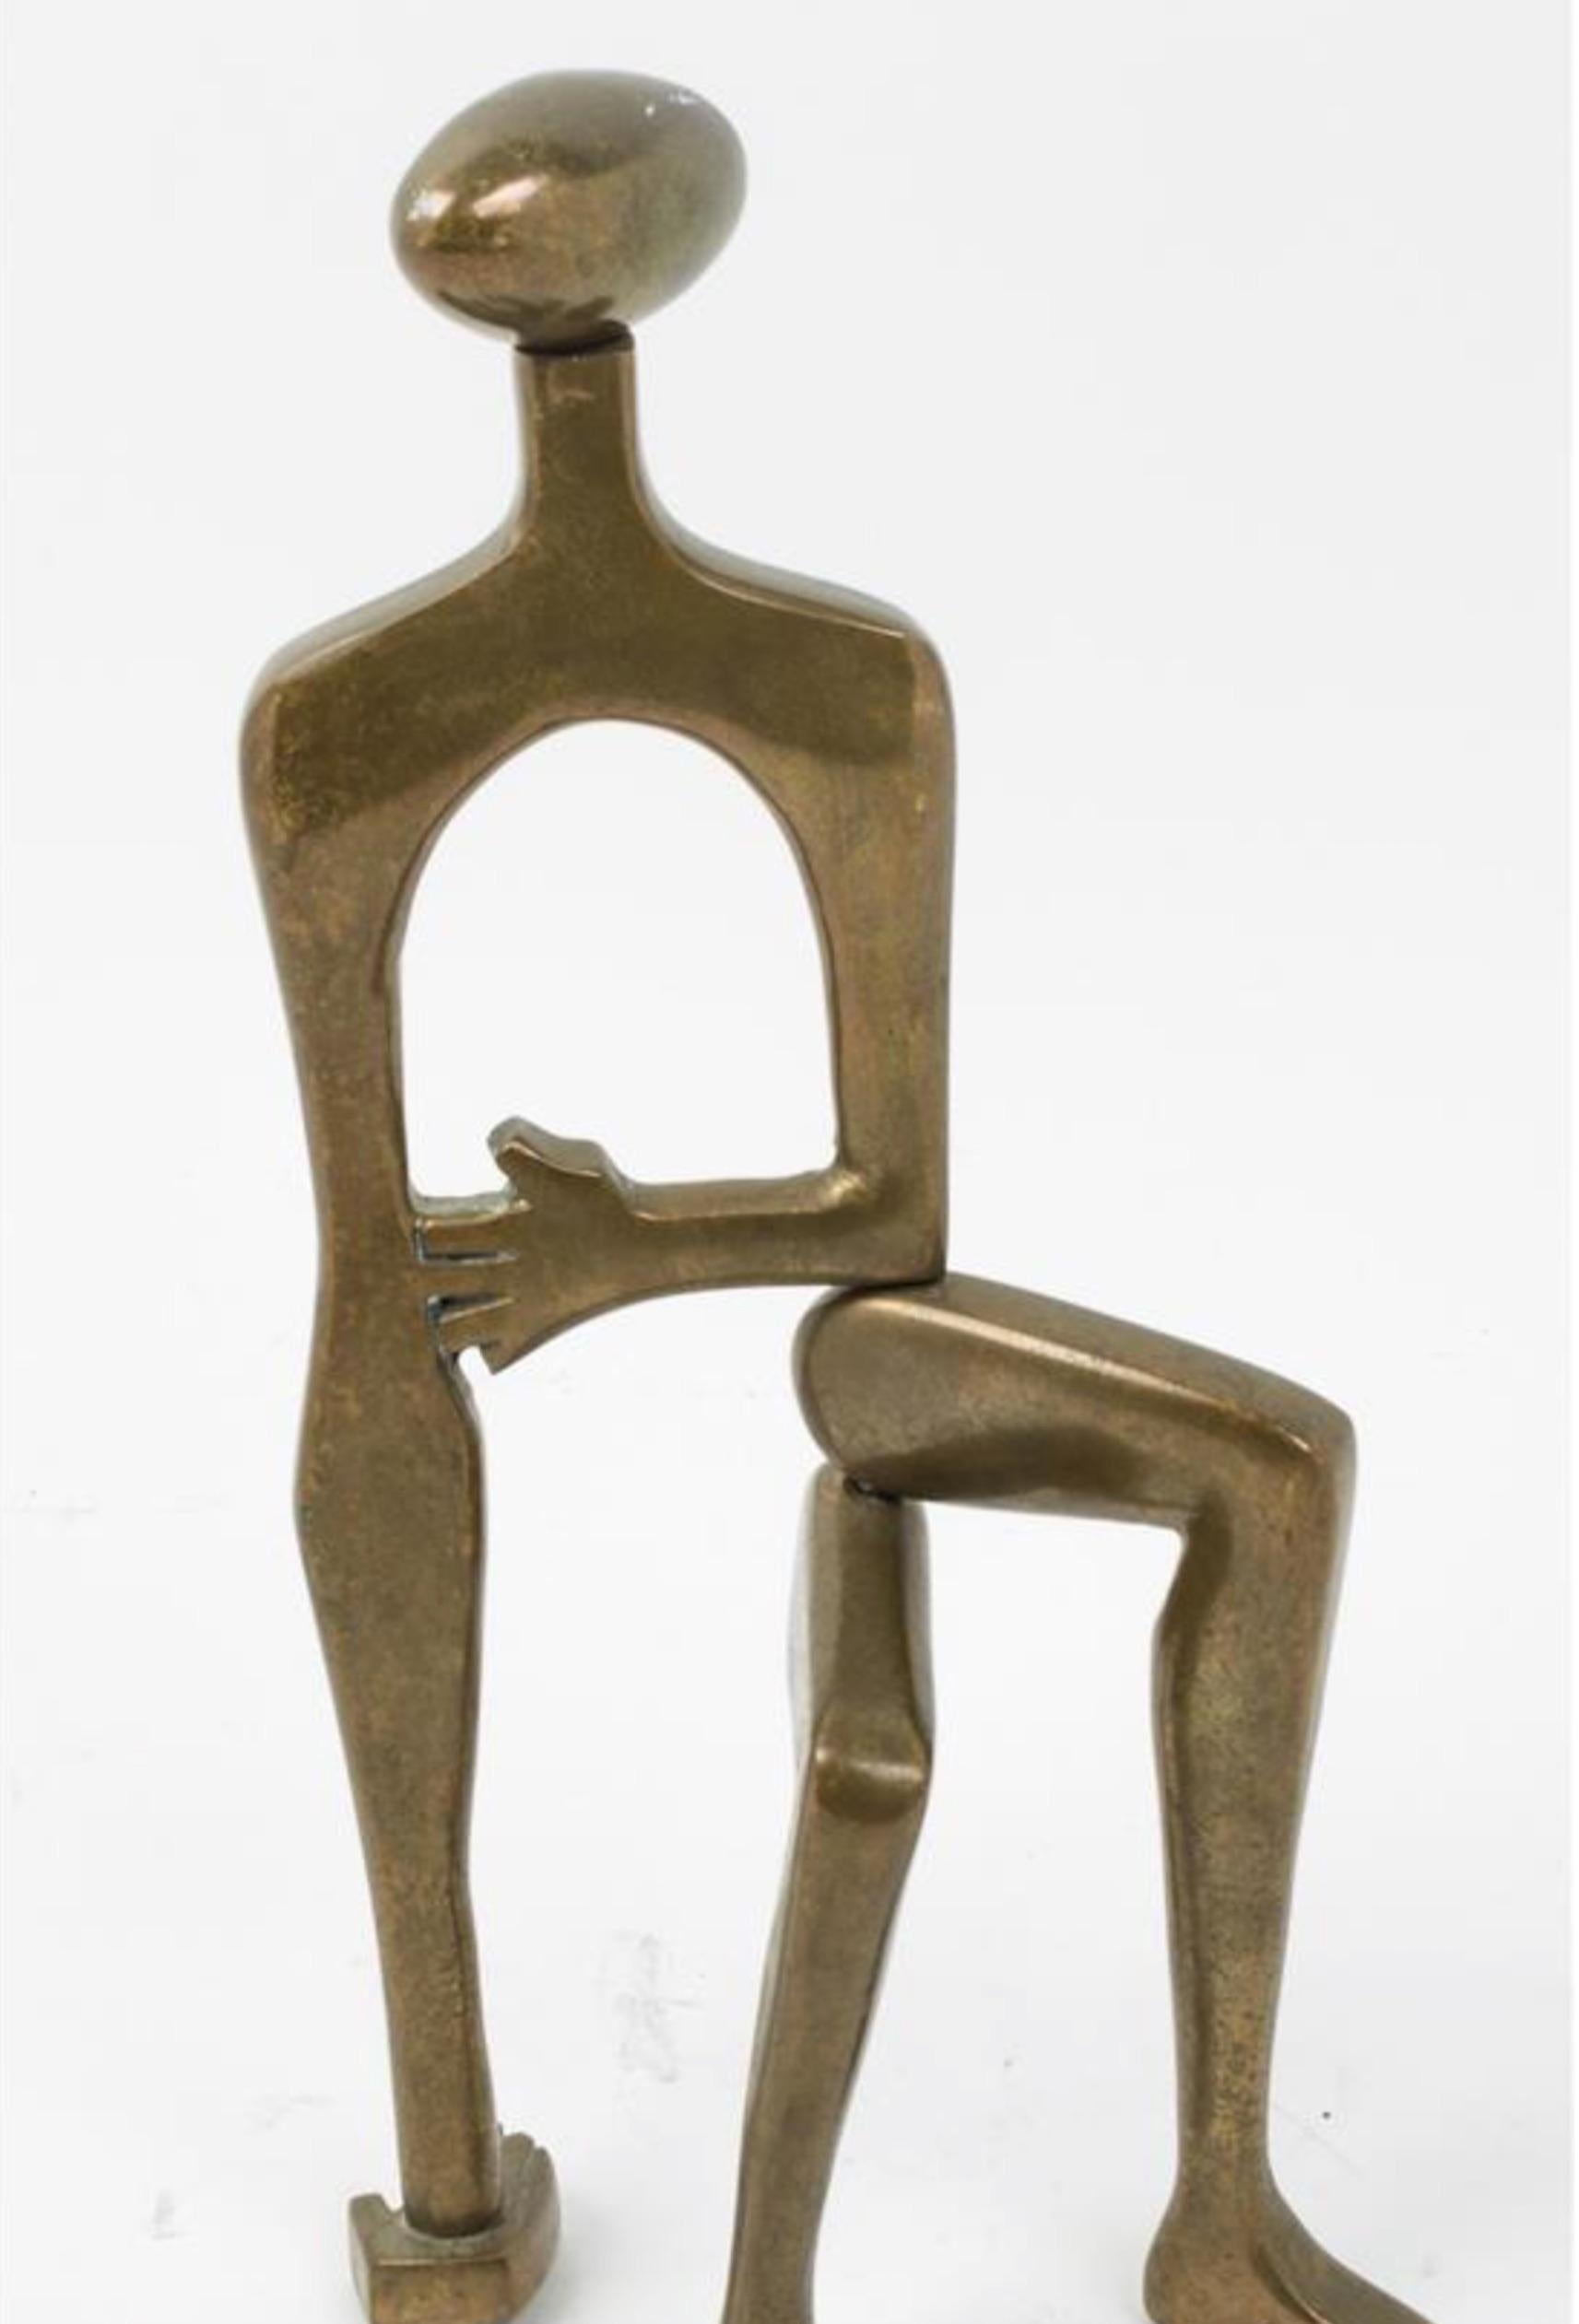 Midcentury brass sculpture Arleen Eichengreen and Nancy Gensburg, American, 20th century, untitled.